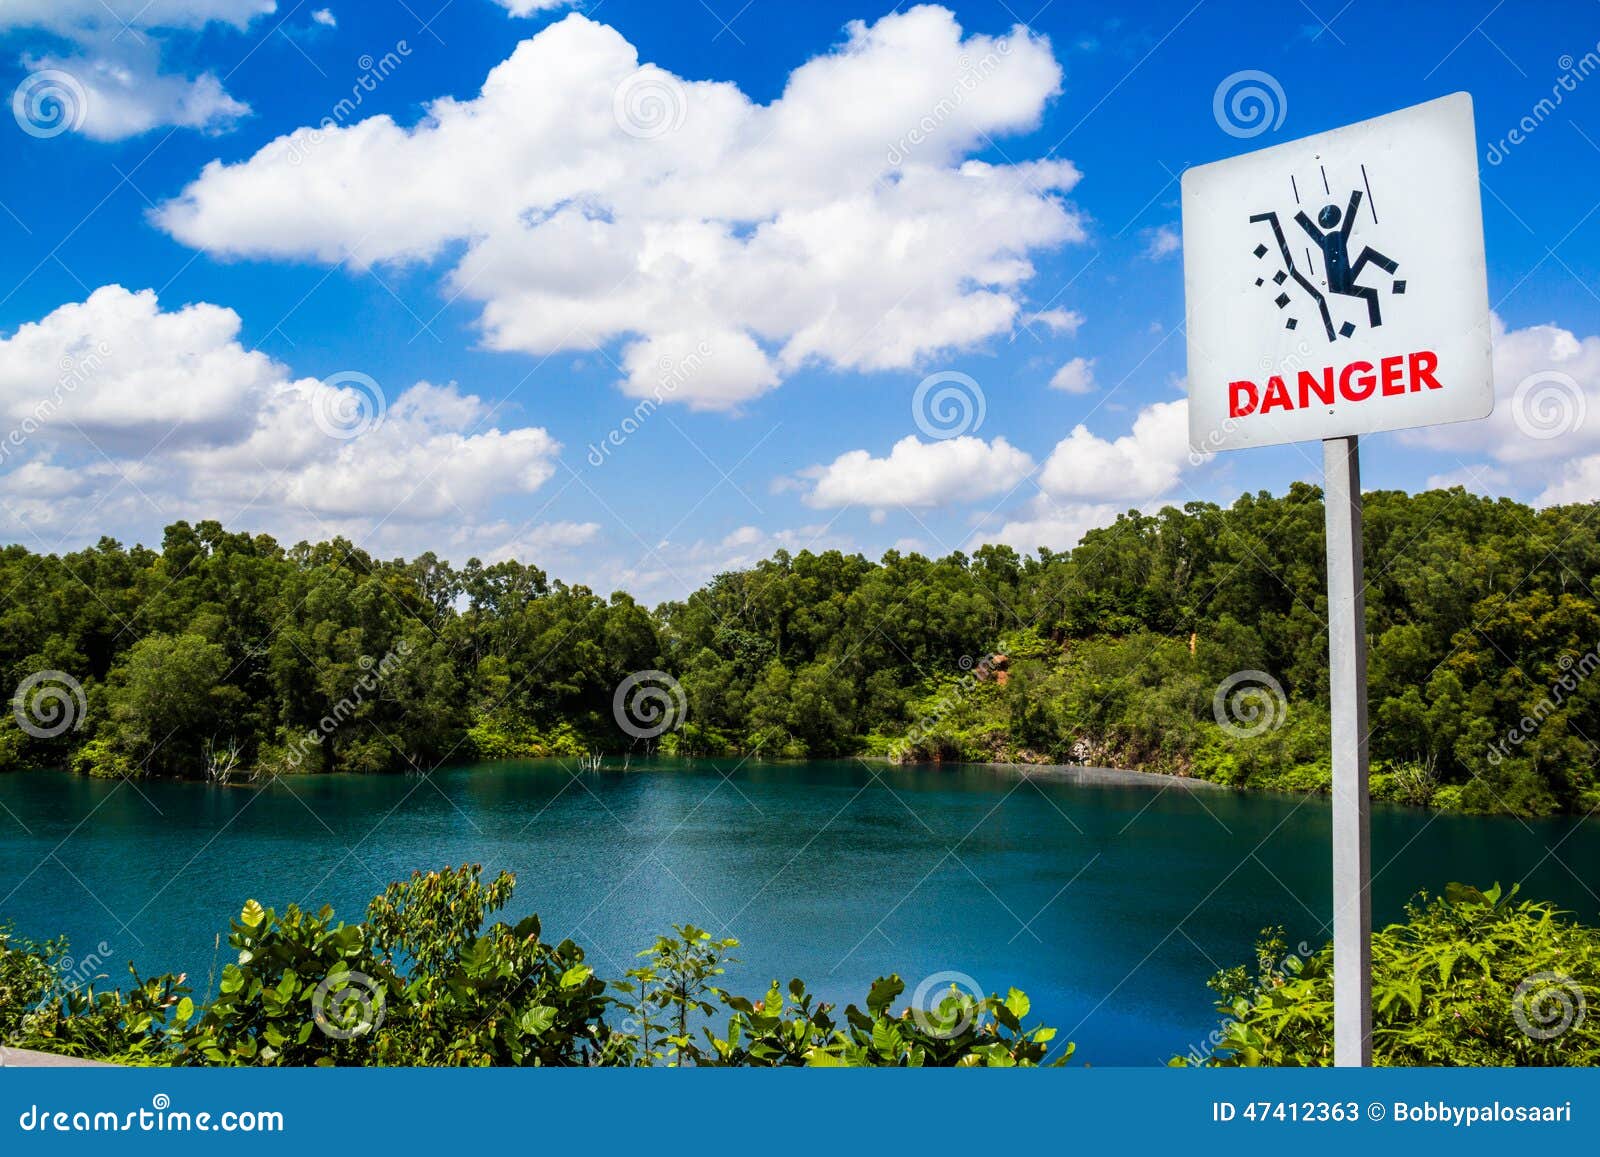 danger warning sign at blue lagoon. pulau ubin, singapore.